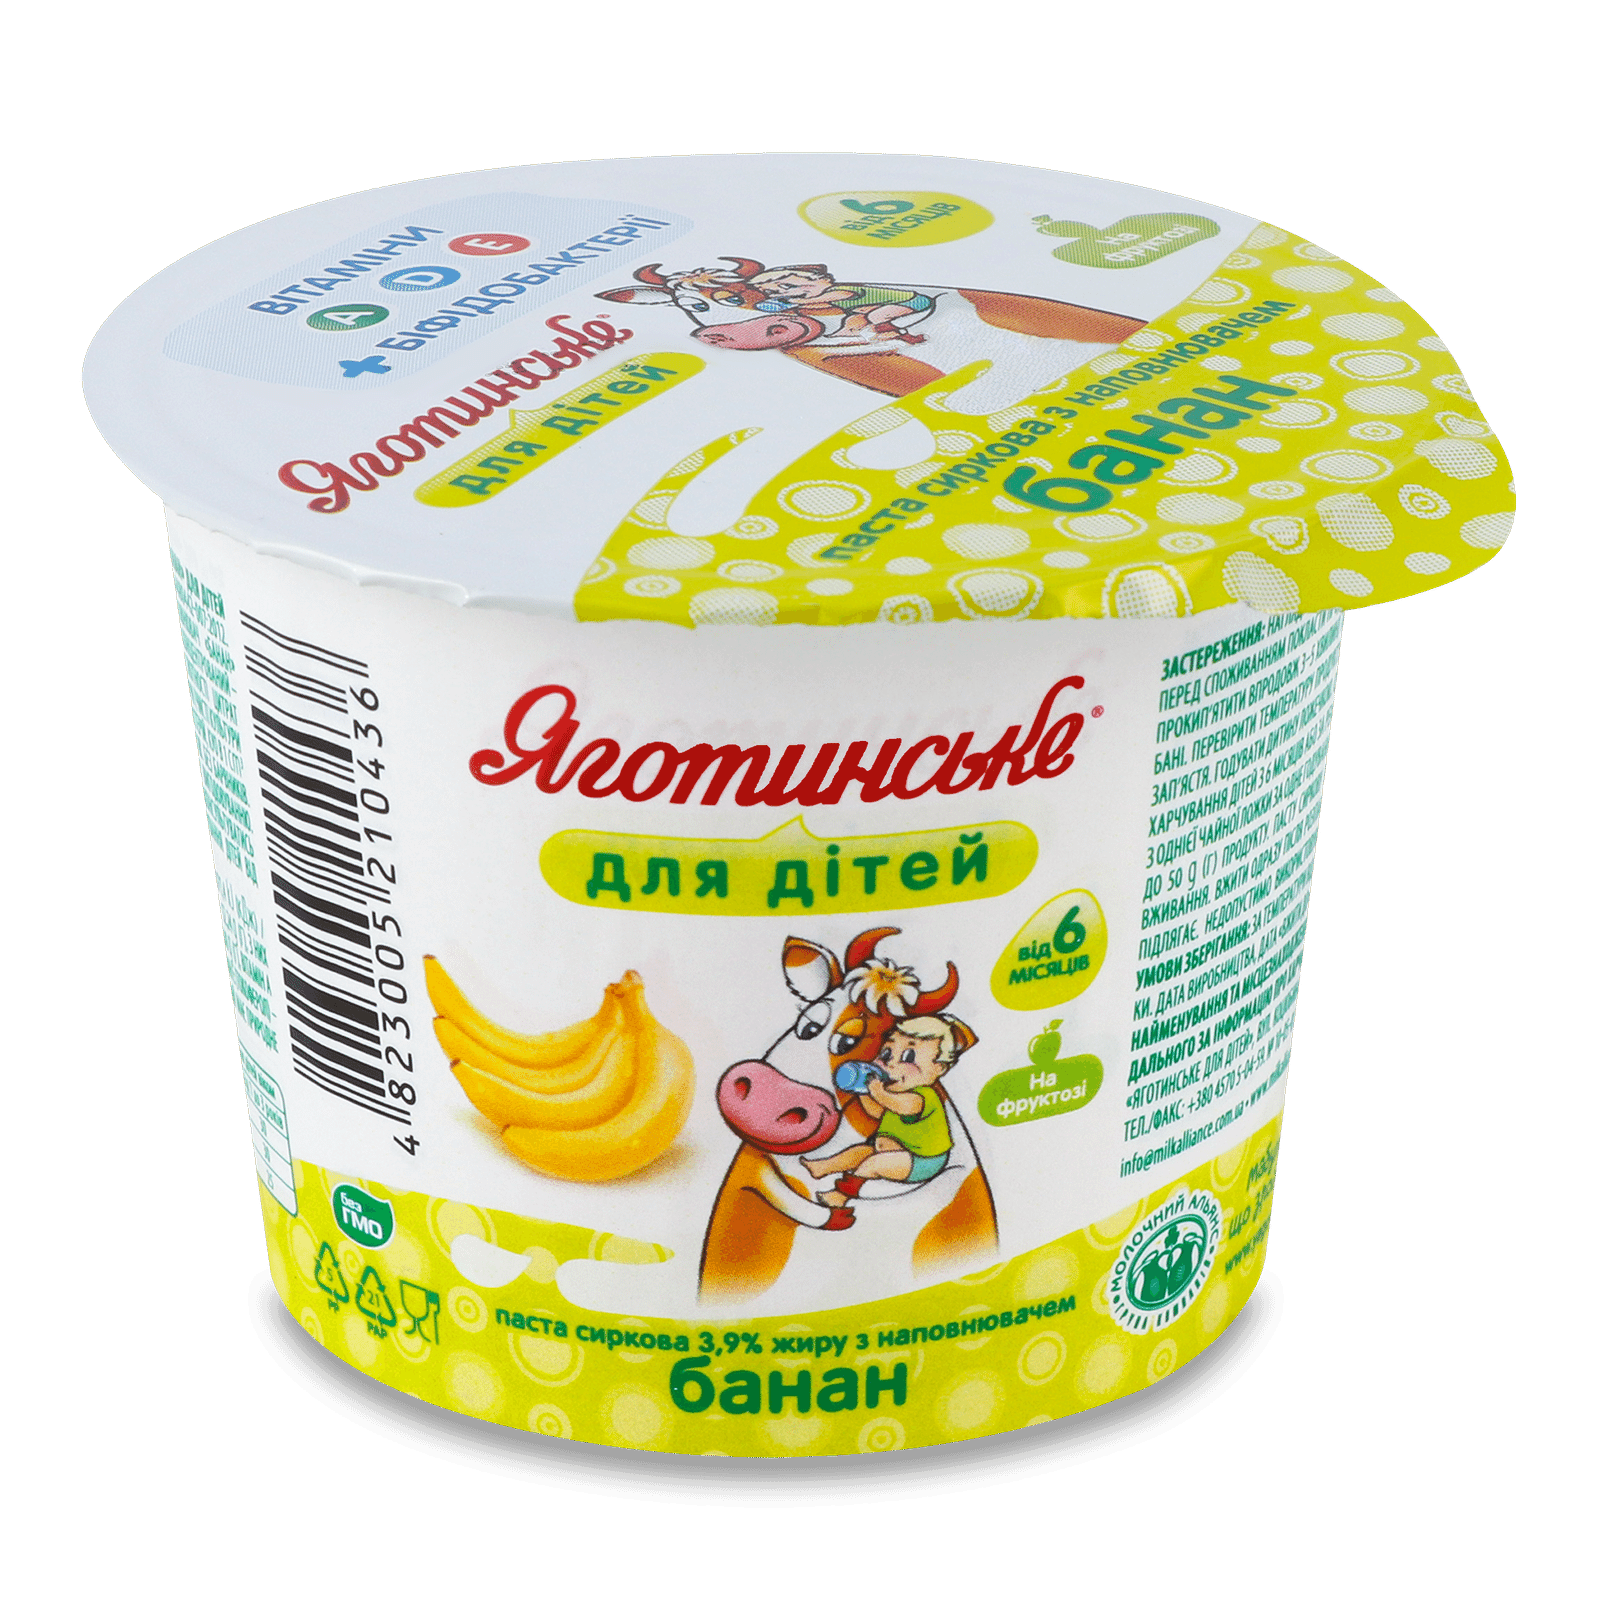 Паста сиркова Яготинське для дітей банан 3,9% - 1